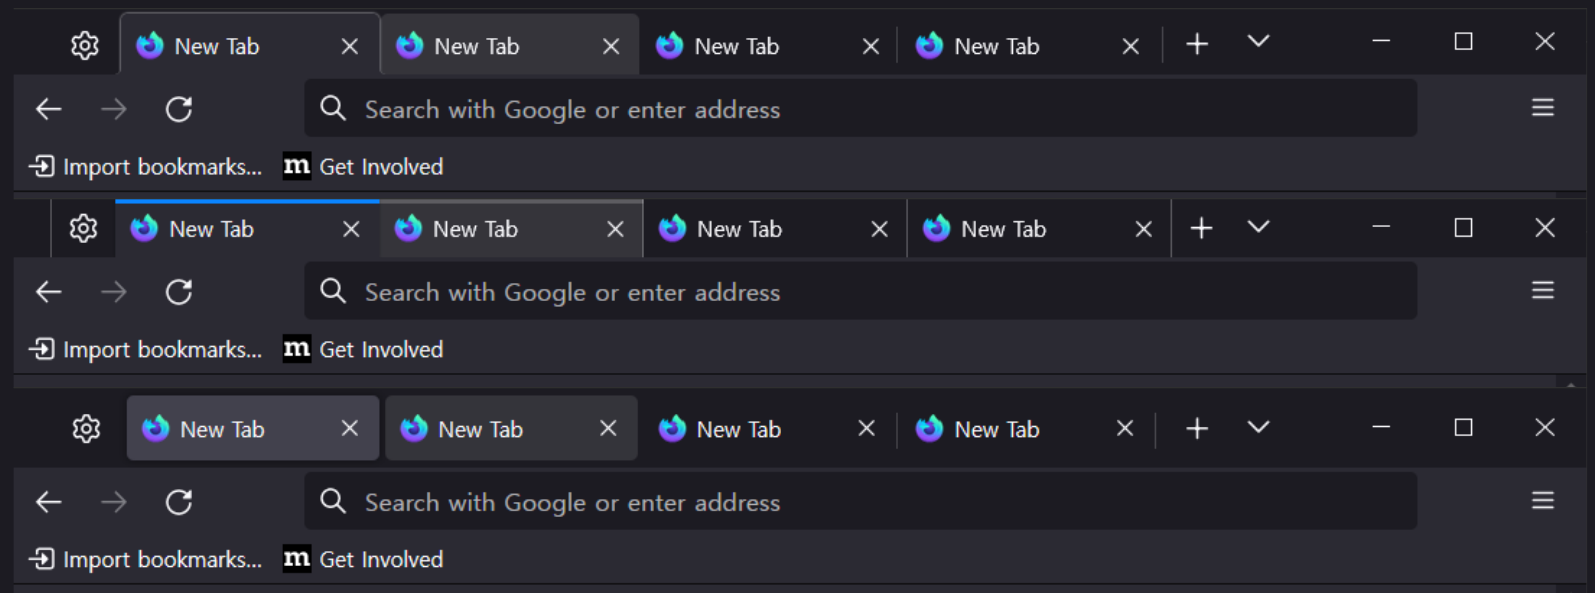 Each tab design